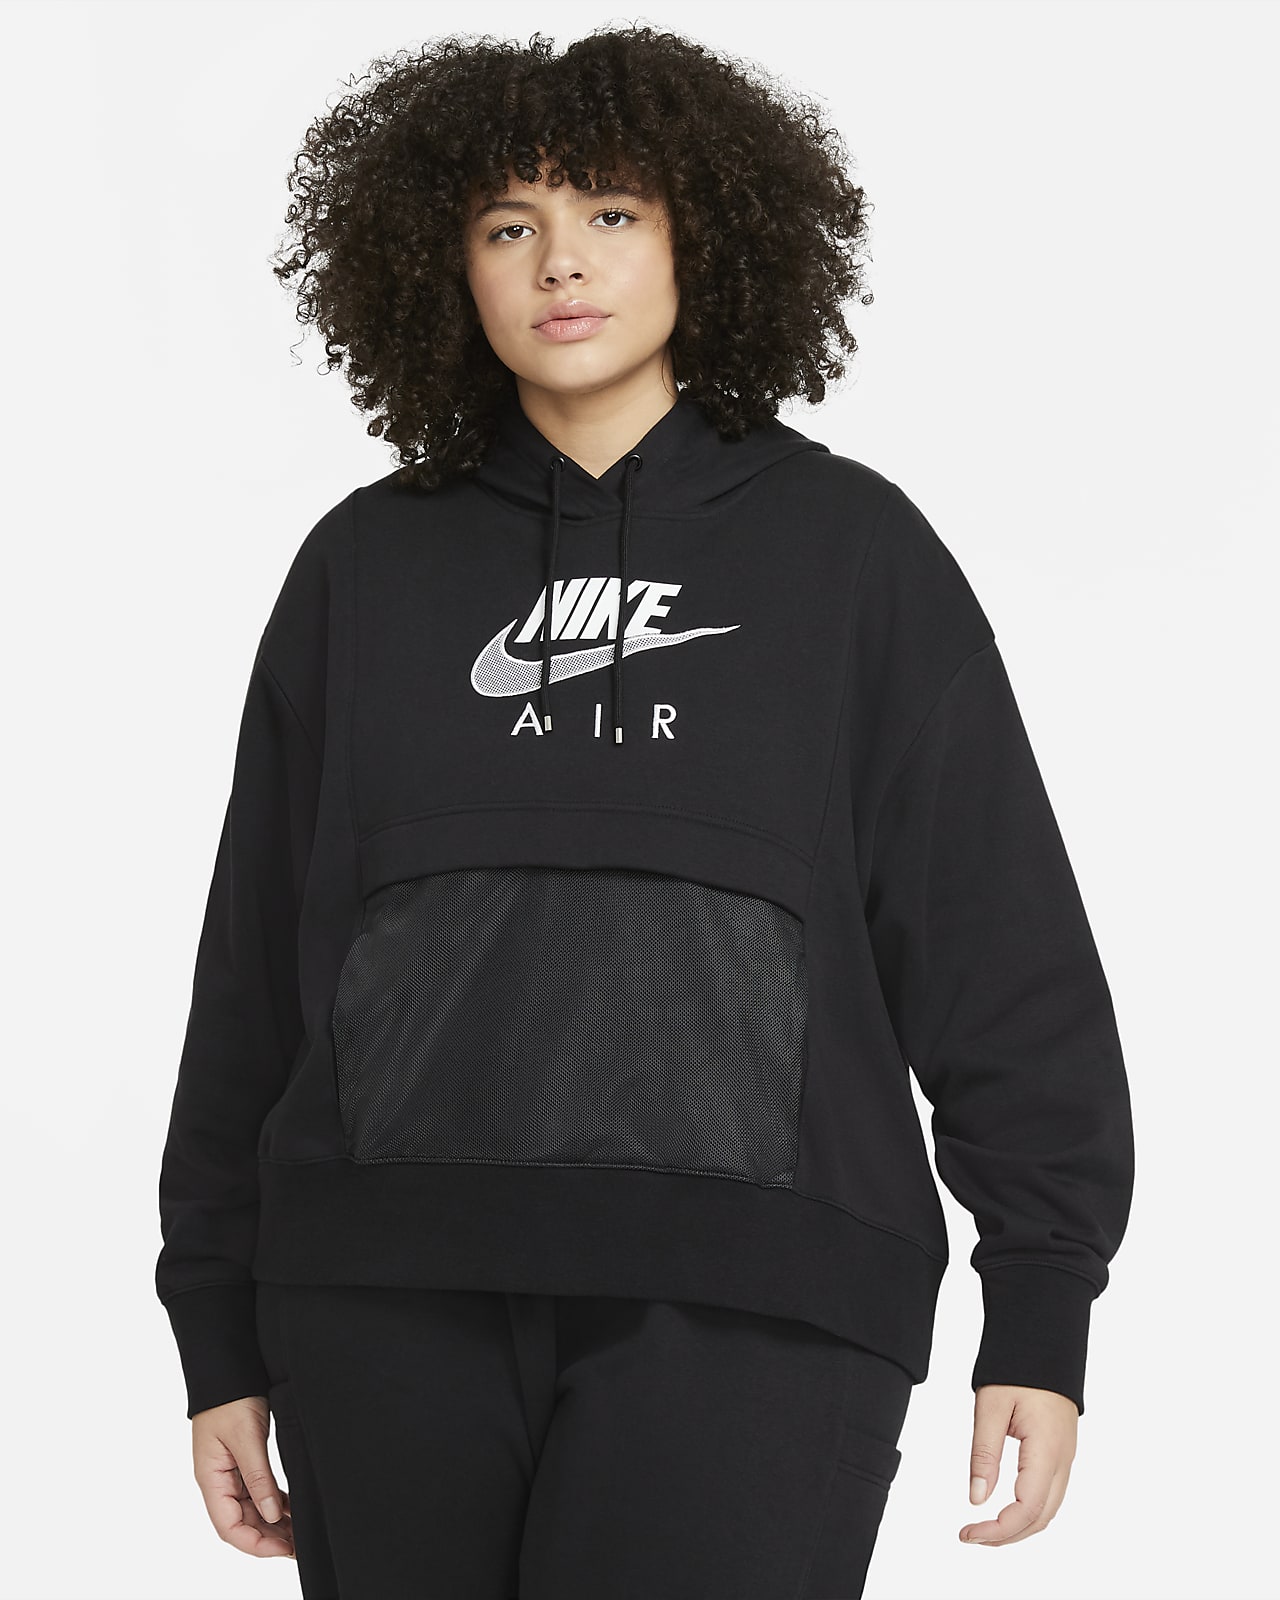 Nike Air Women's Hoodie (Plus Size 